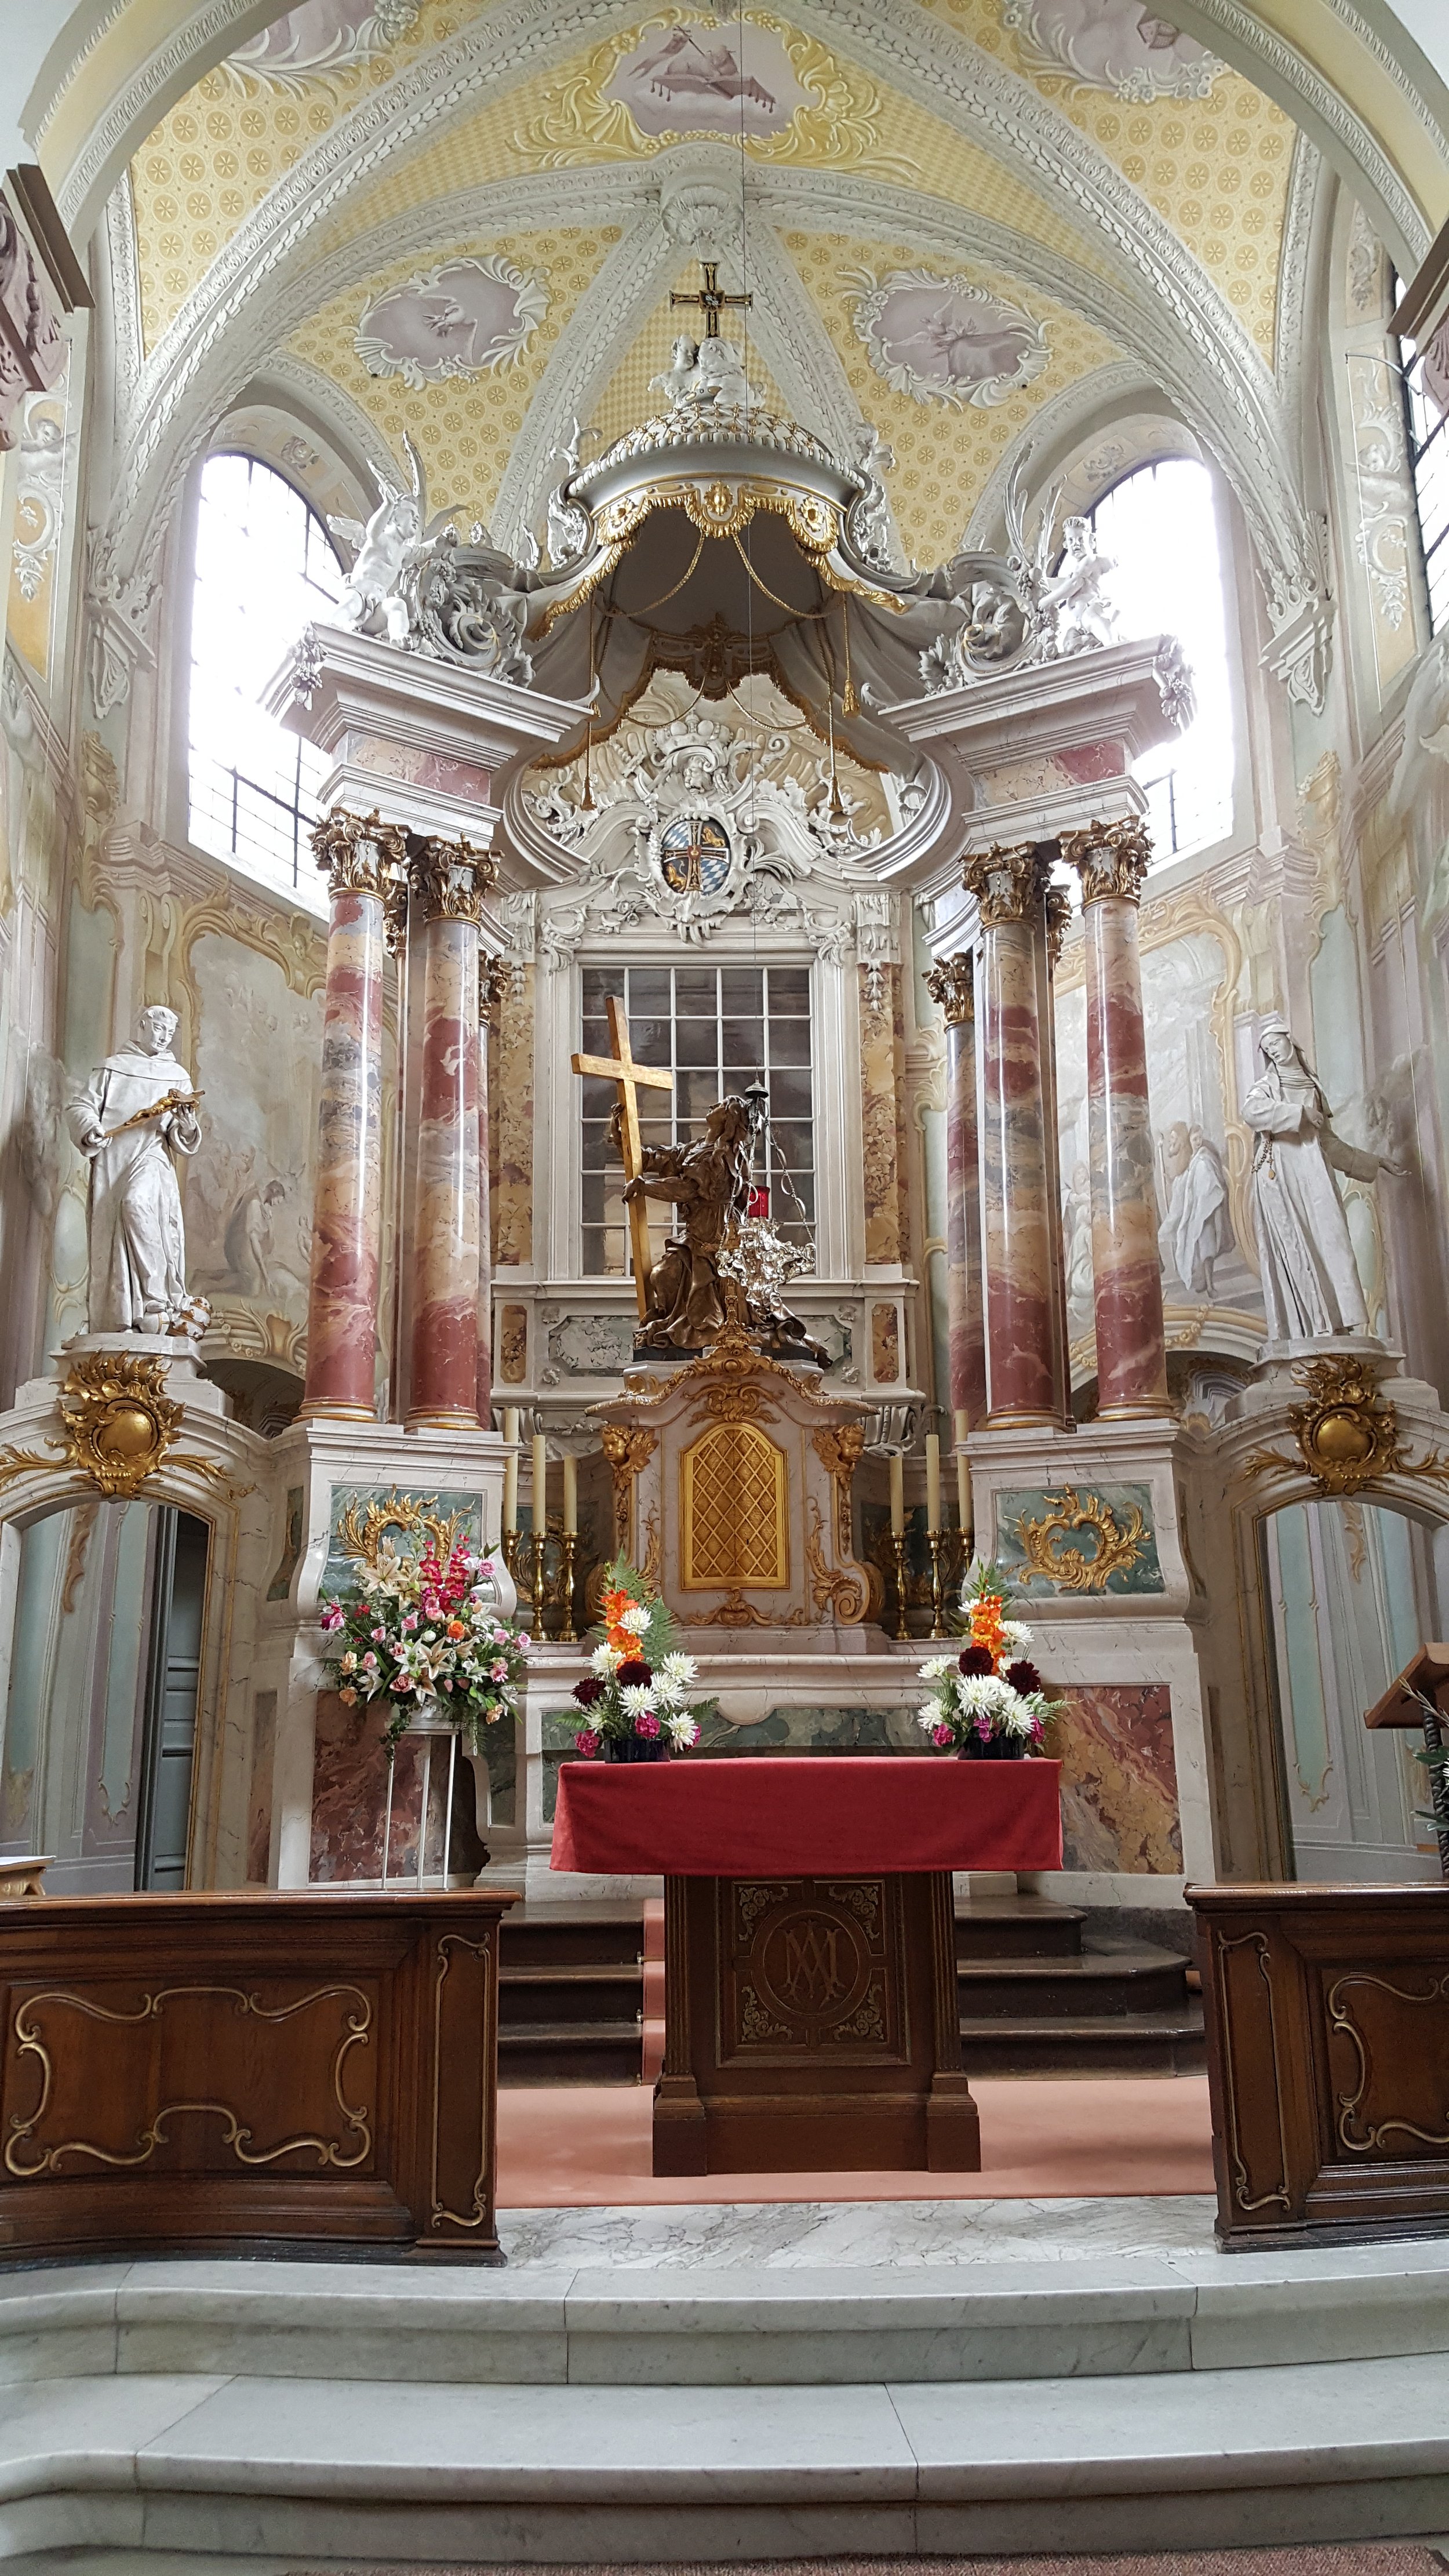 Kreuzbergkirche